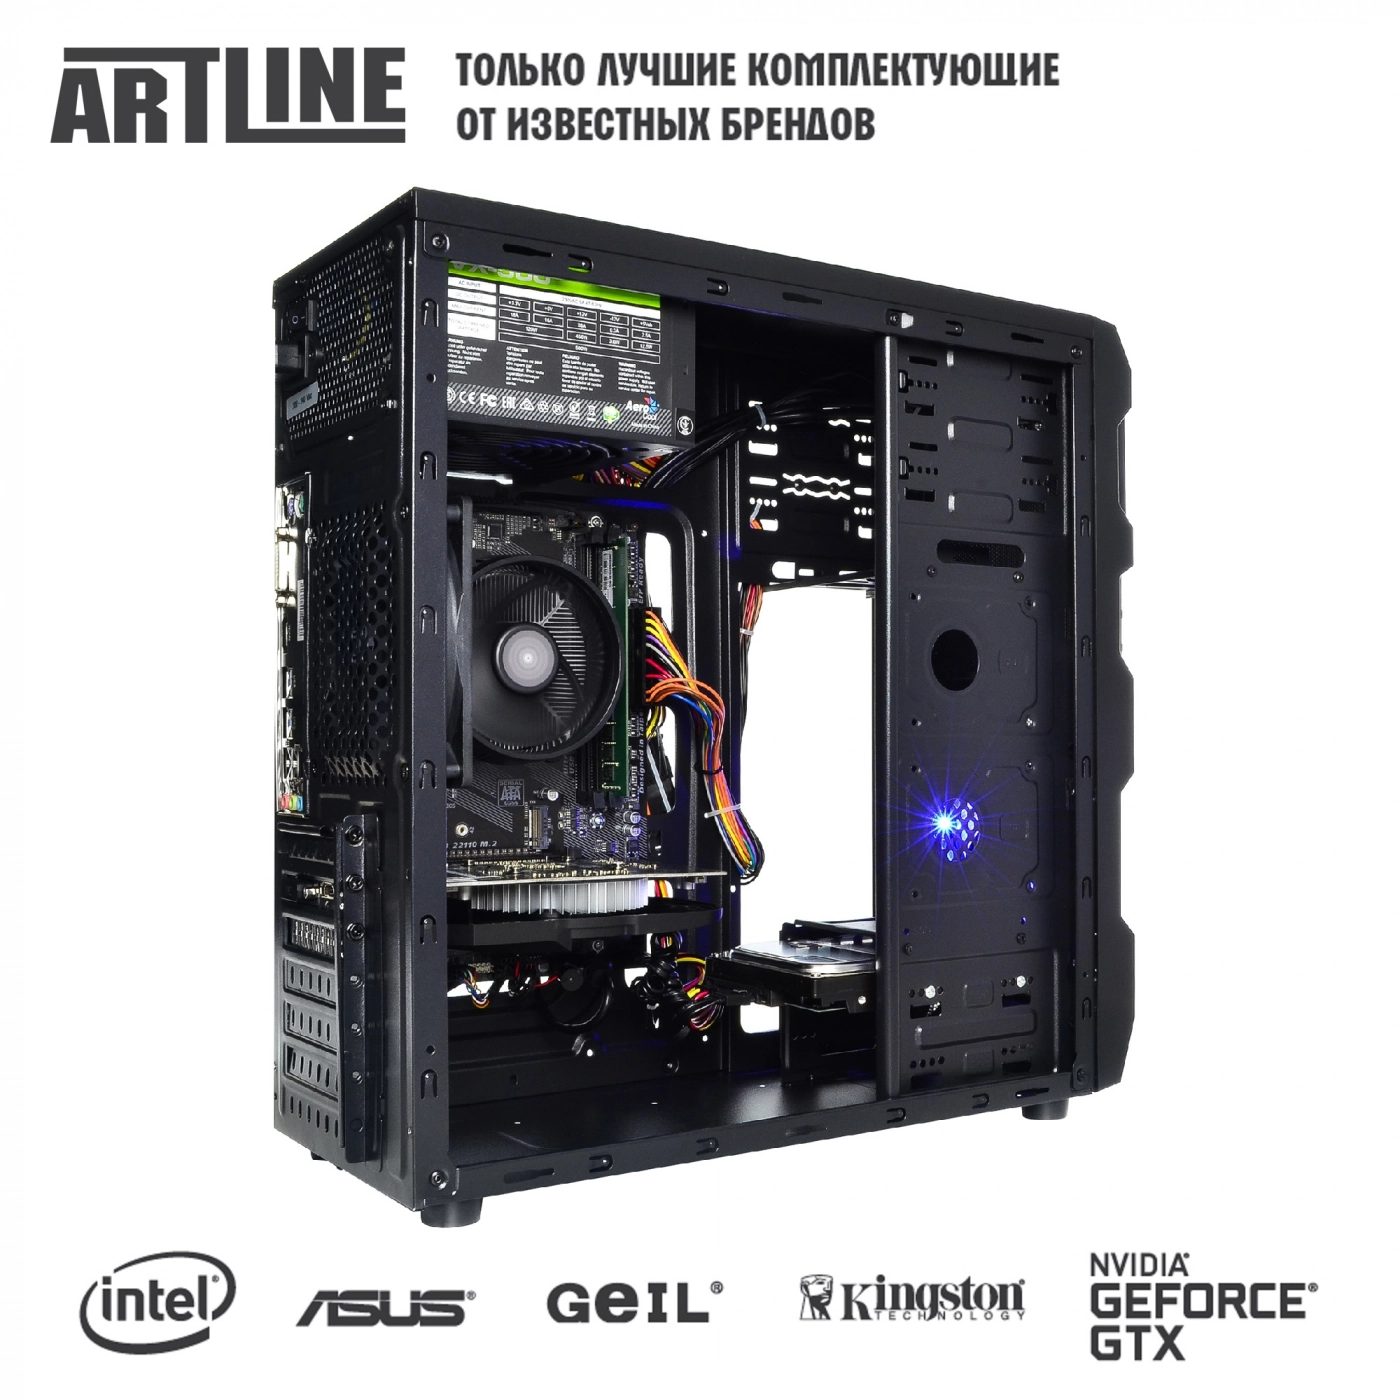 Купить Компьютер ARTLINE Gaming X31v15 - фото 6